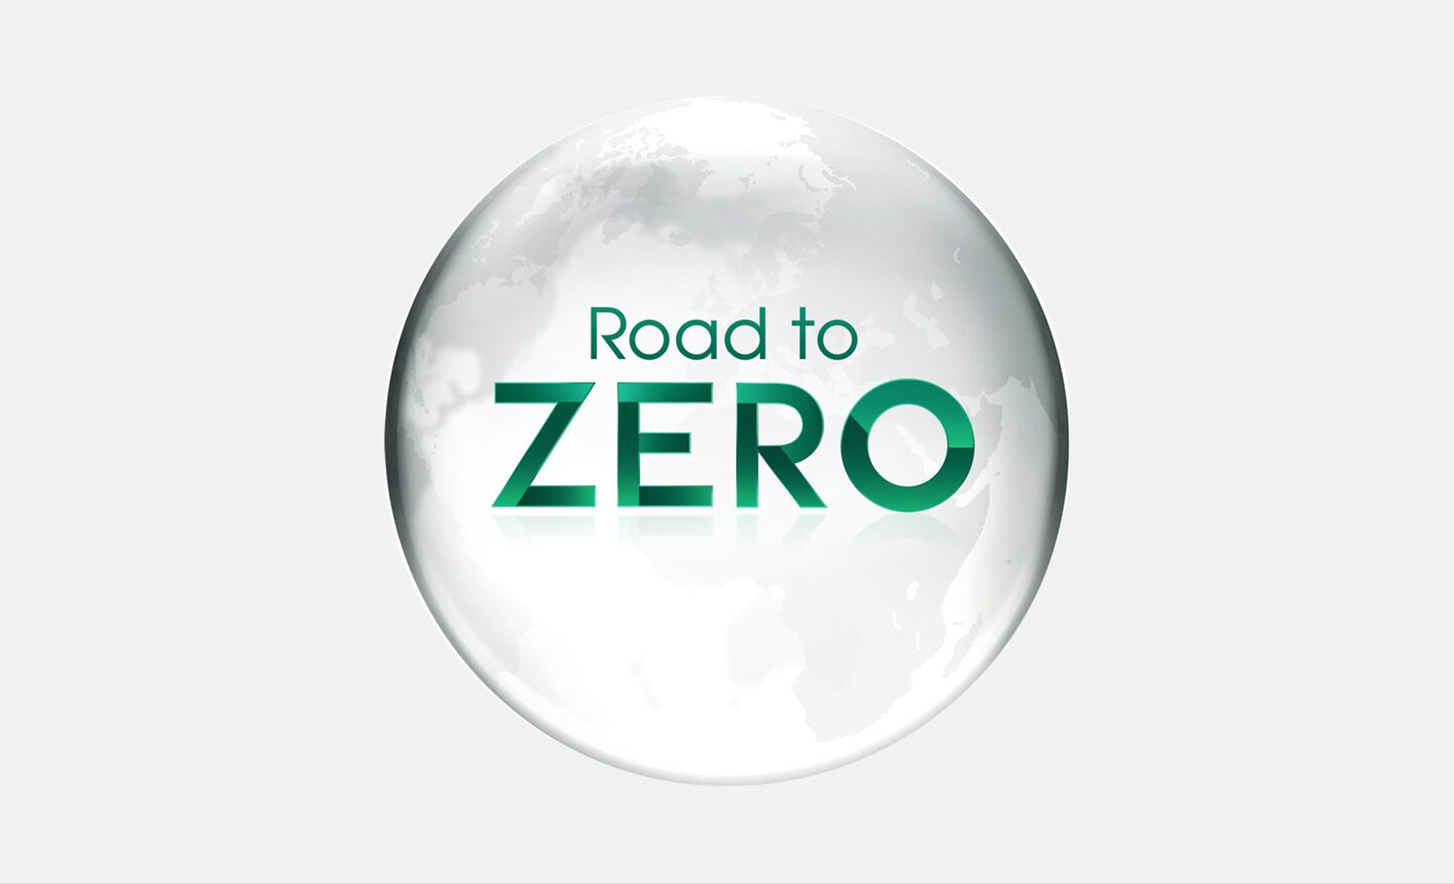 ソニーが掲げる「Road to Zero」を示す画像